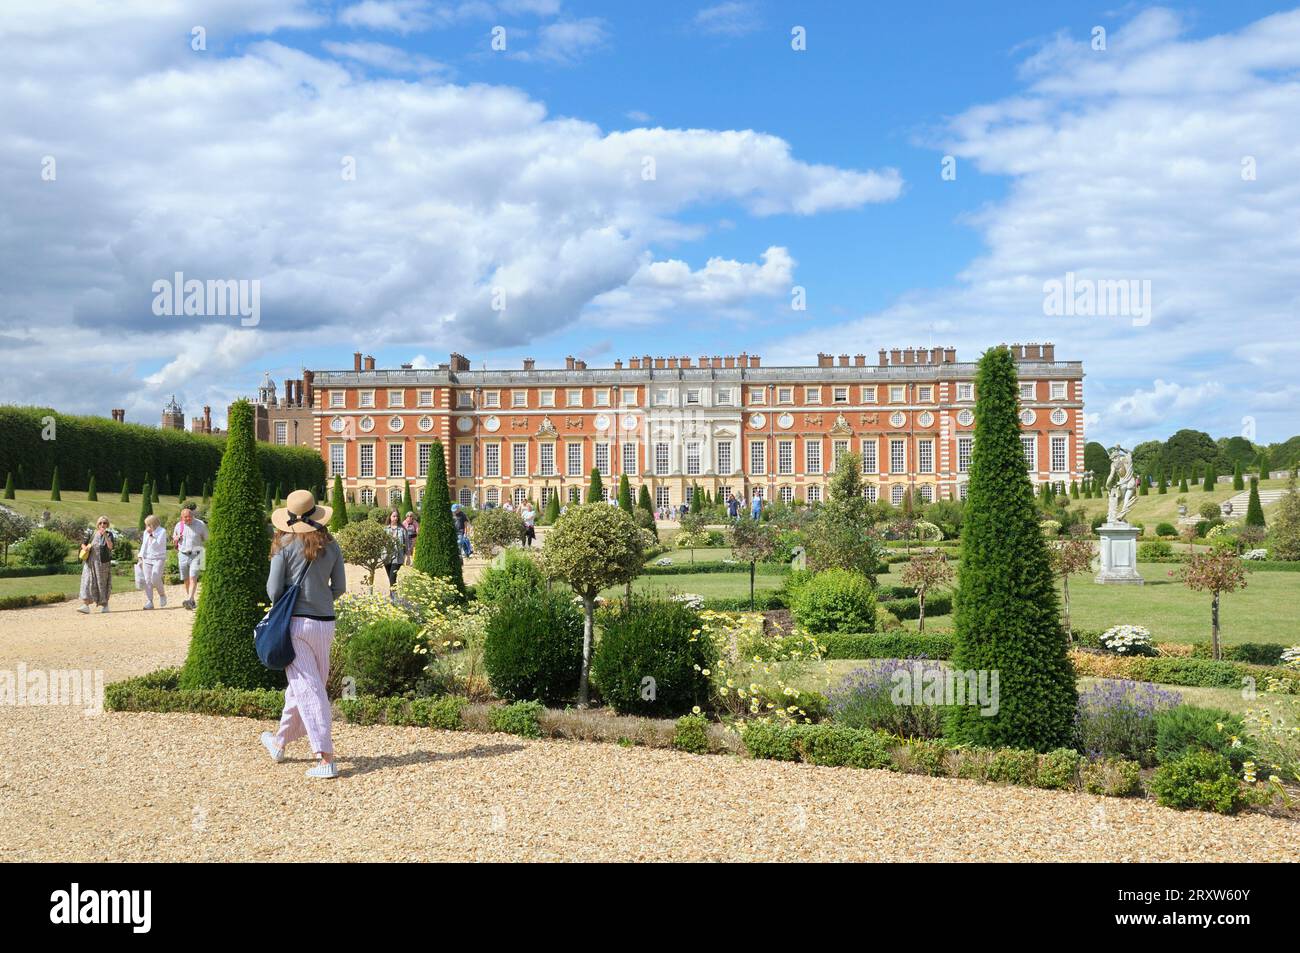 Hampton Court Palace e Privy Garden in estate. Lo storico palazzo reale confina con il borgo londinese di Richmond upon Thames e Surrey, Inghilterra, Regno Unito Foto Stock